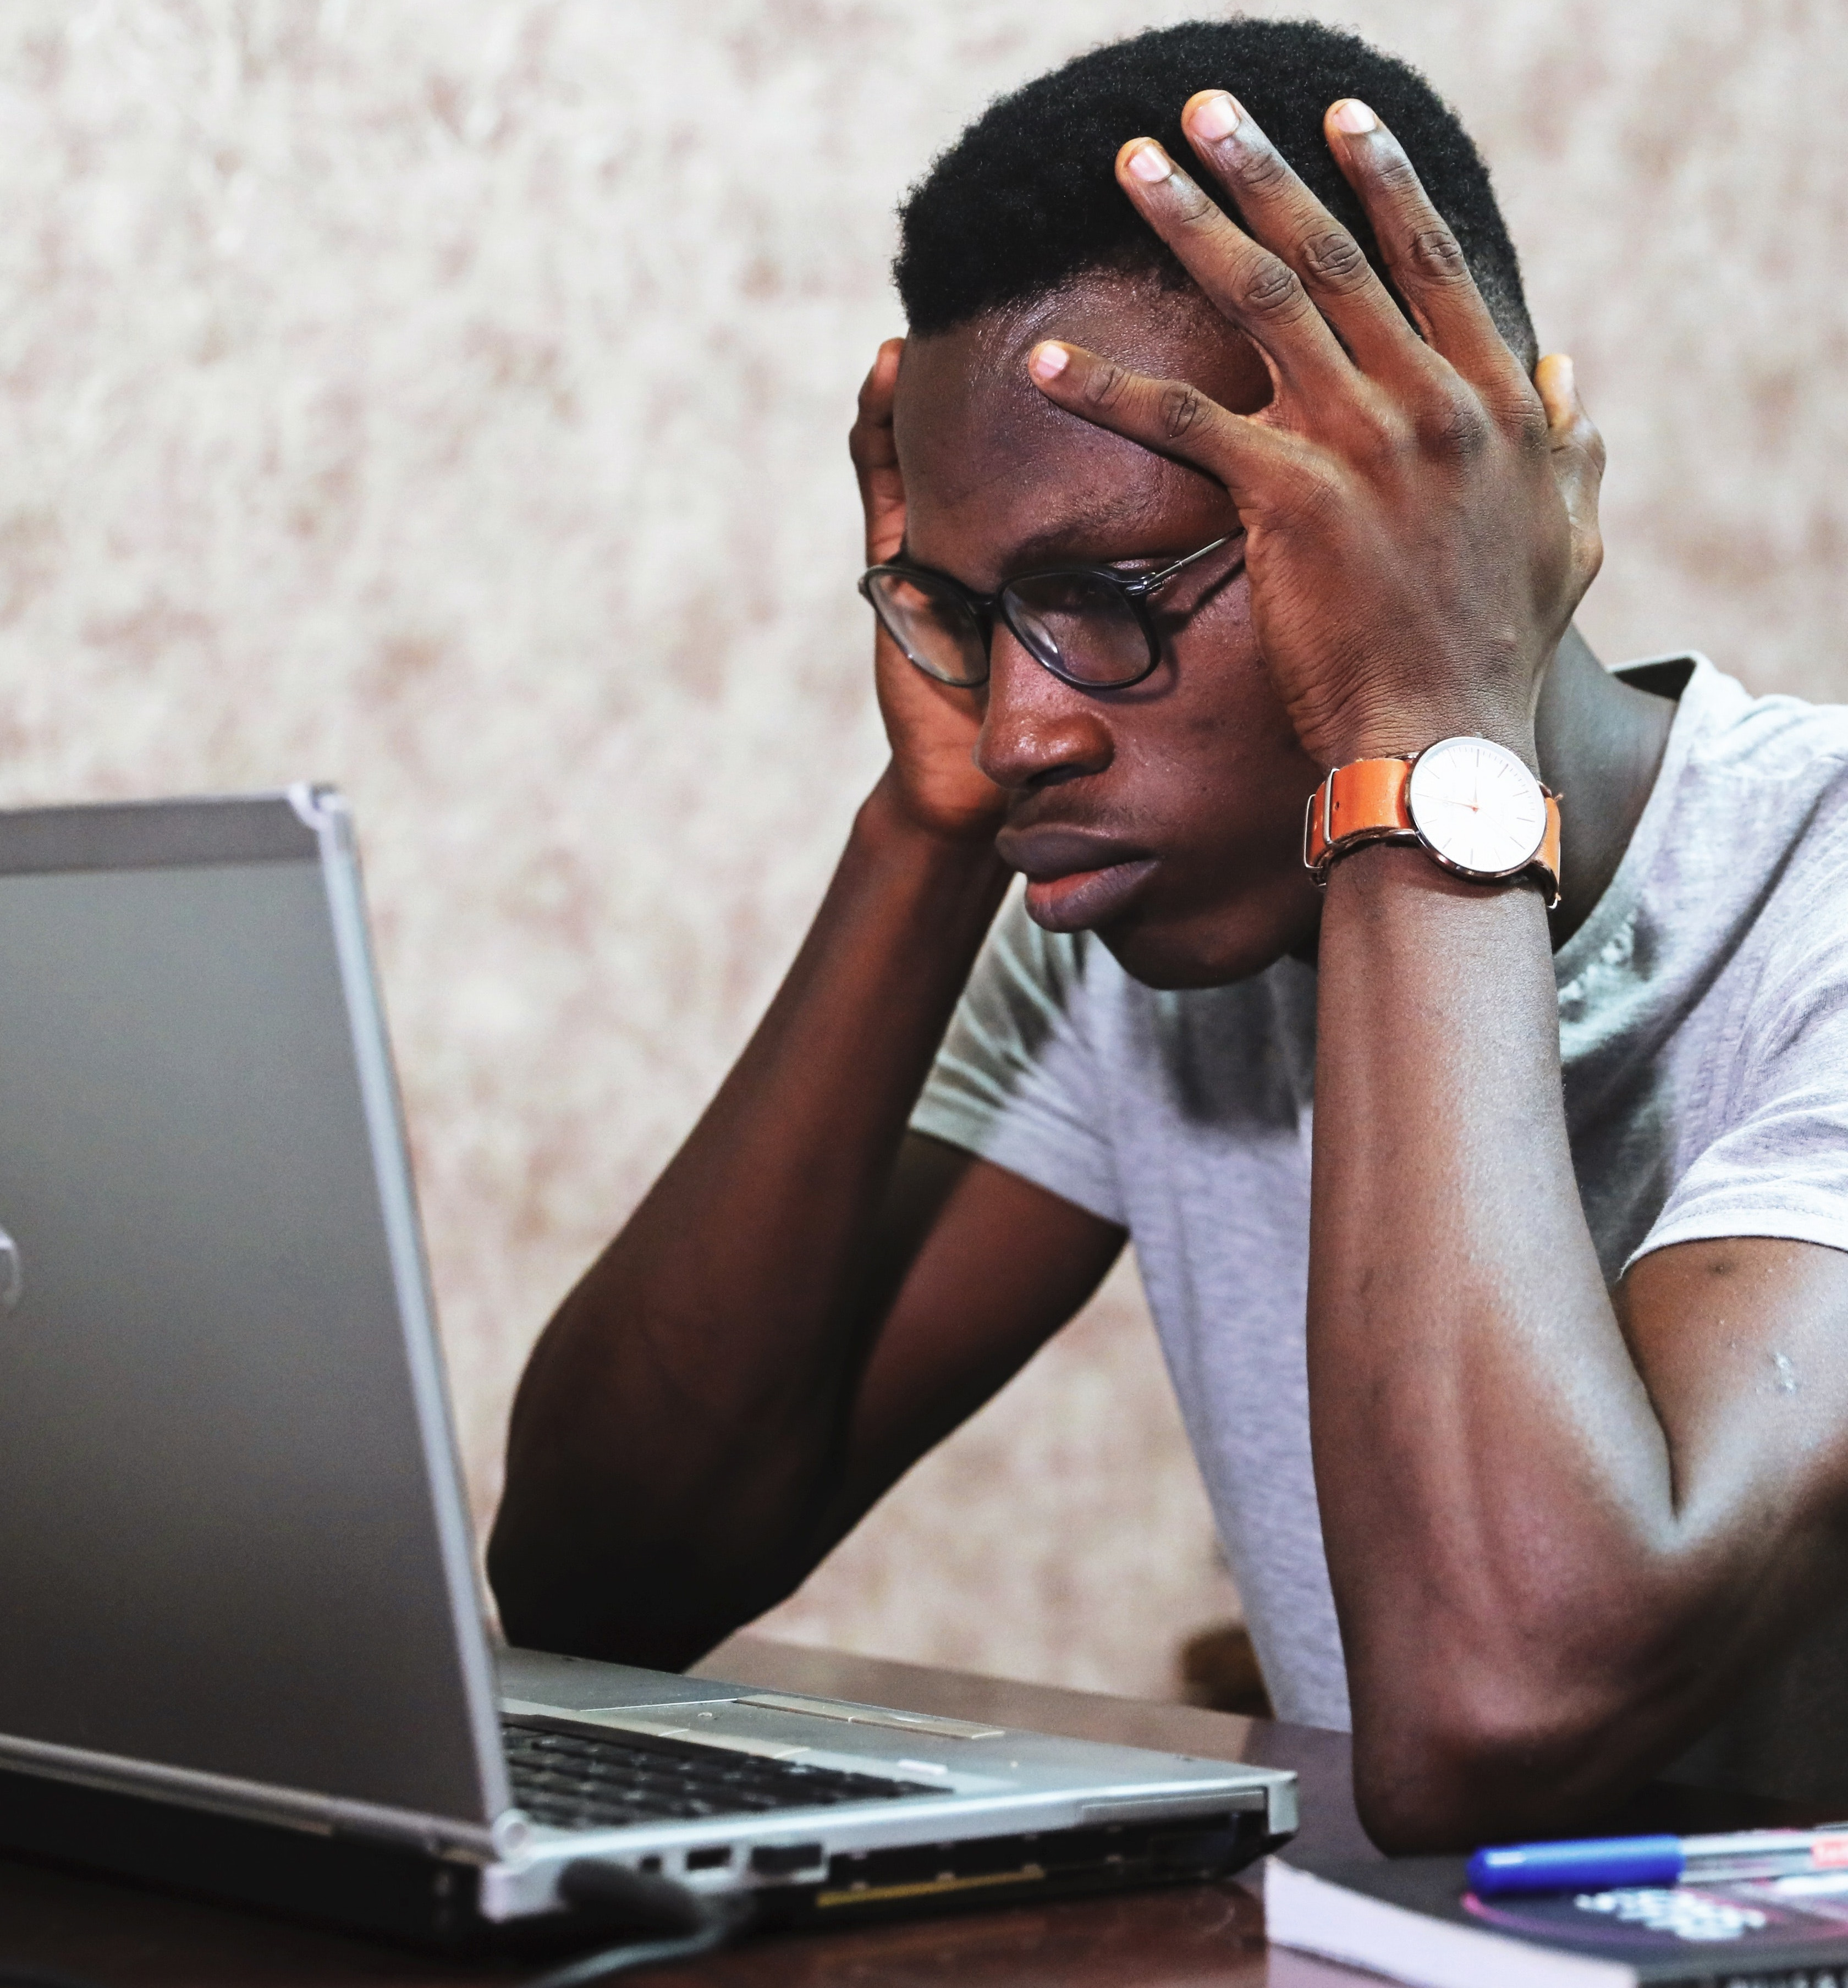 Man staring intently at laptop. Image courtesy Oladimeji Ajegbile, via Pexels.